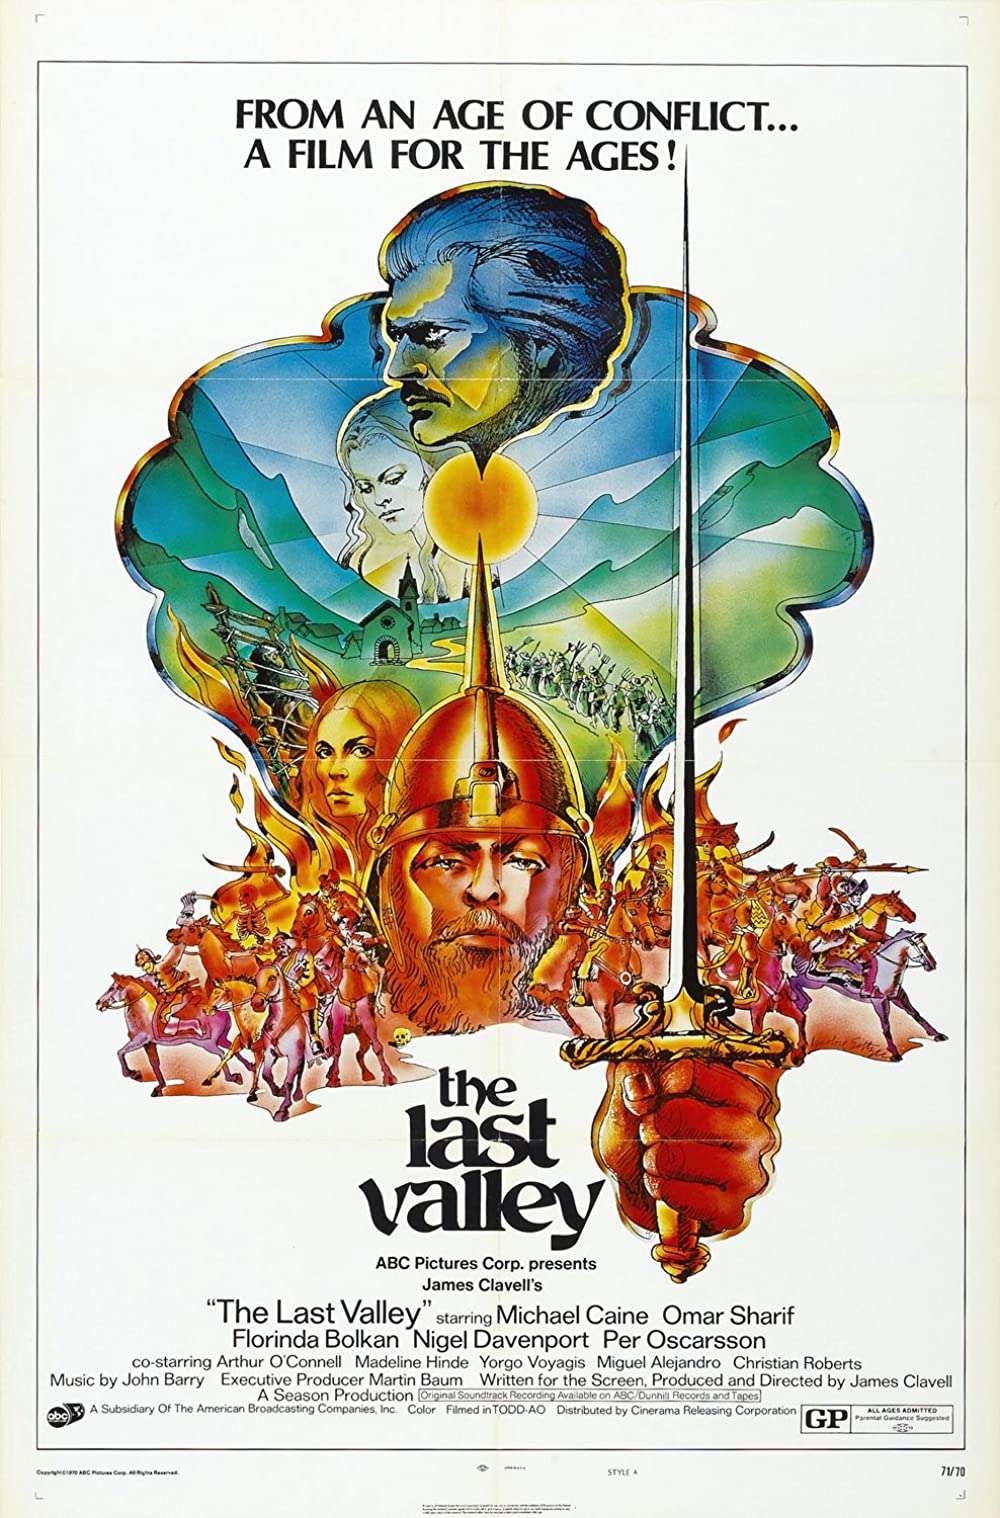 Filmbeschreibung zu The Last Valley